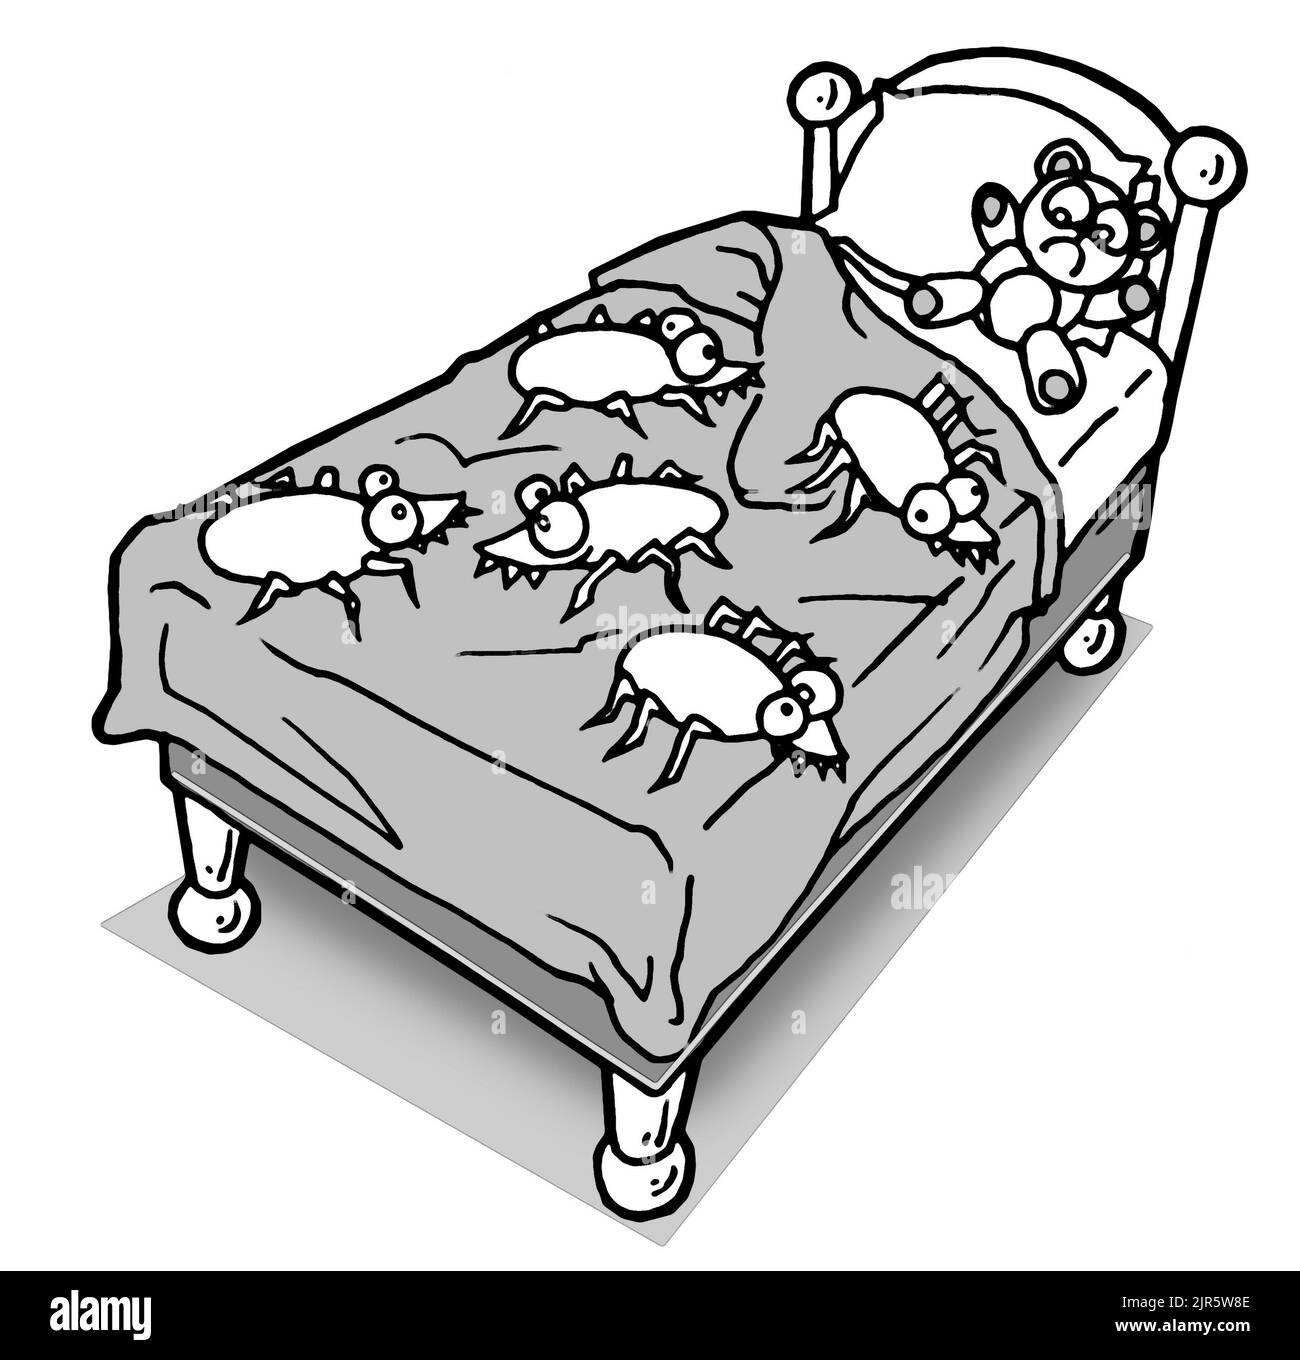 Karikatur, die ein Bett illustriert, das mit übergroßen Insekten bedeckt ist. Die gewöhnlichen Bettwanzen (cimex lectularius) sind Insekten der Gattung Cimex, die sich von Blut ernähren Stockfoto